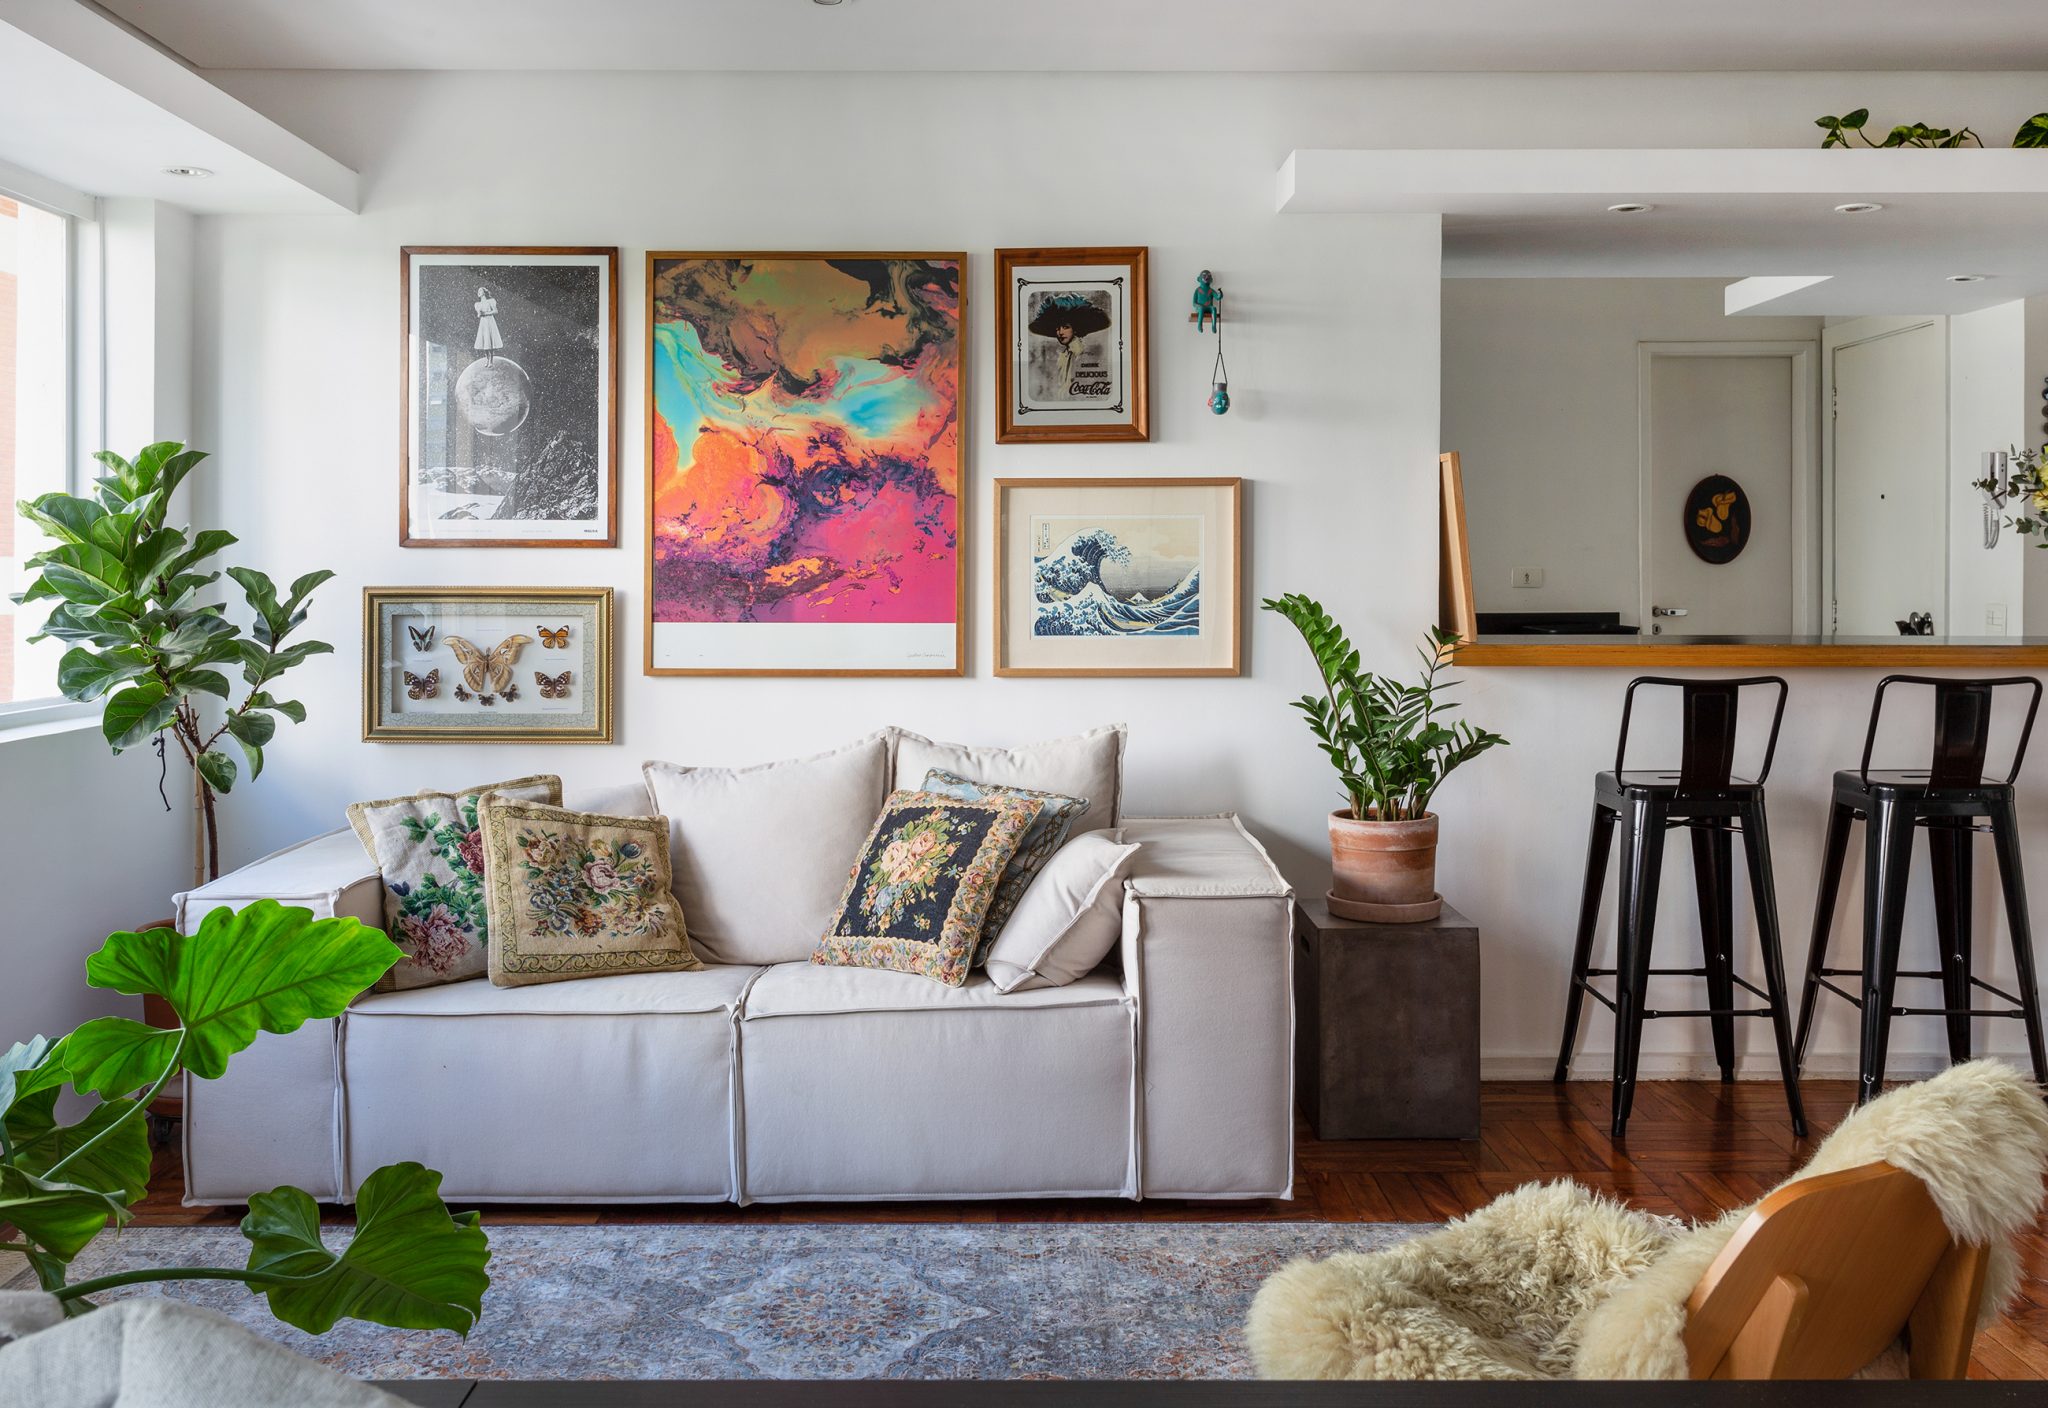 Apartamento alugado com ambientes integrados e muitos objetos vintage para uma decoração com personalidade